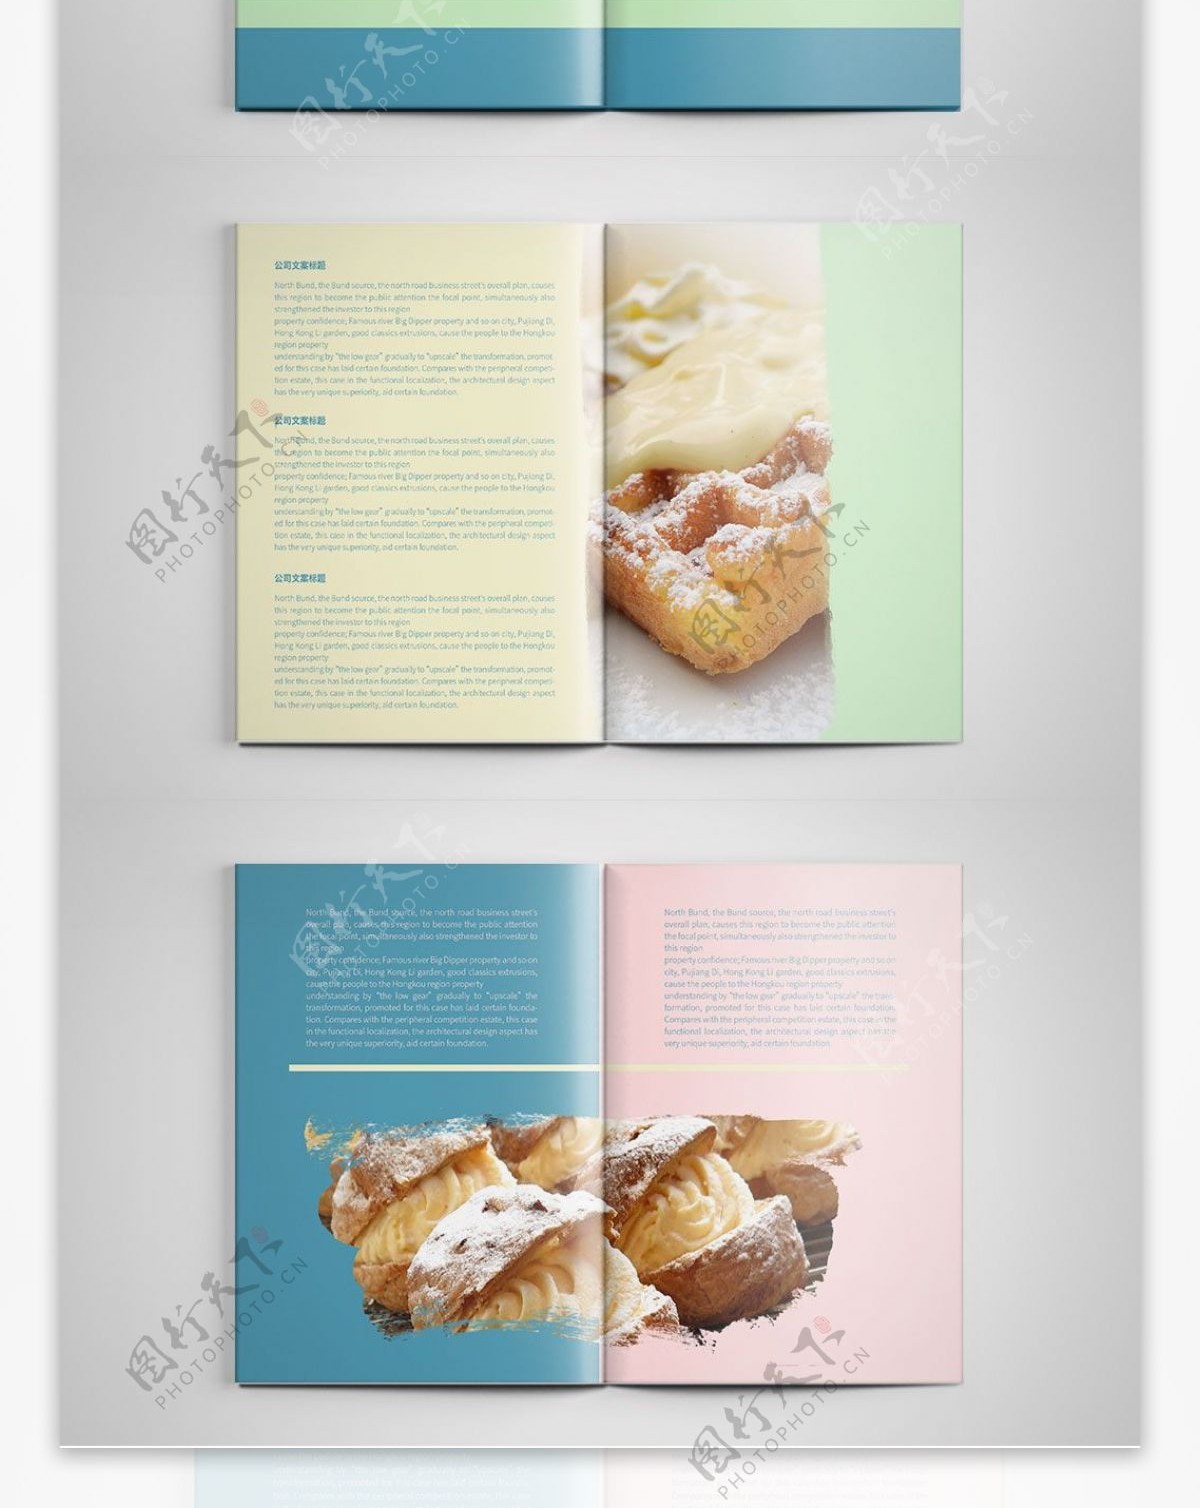 简约时尚甜品店宣传画册设计PSD模板